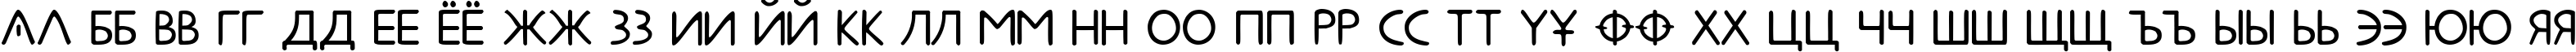 Пример написания русского алфавита шрифтом Metrolox